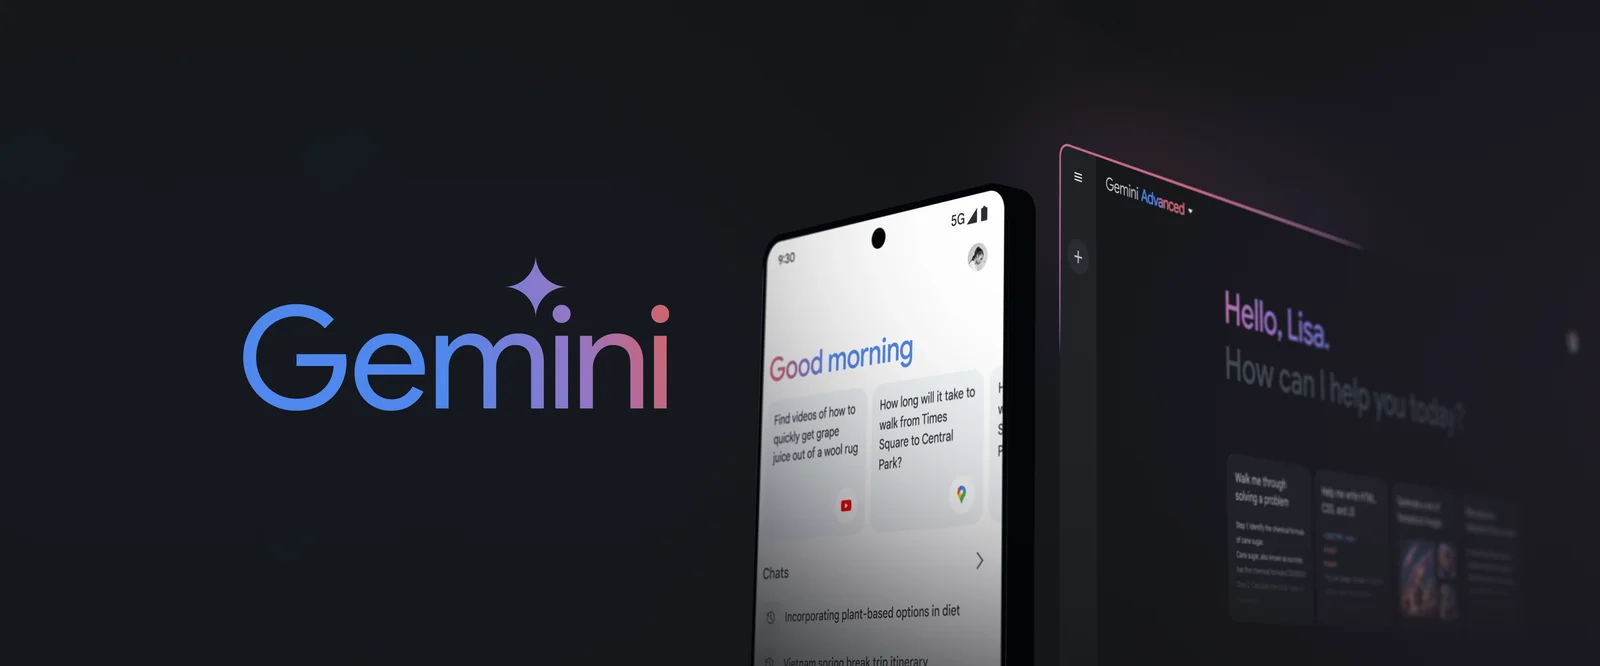 Google Bard diventa Gemini e aggiunge nuove funzioni e un’app